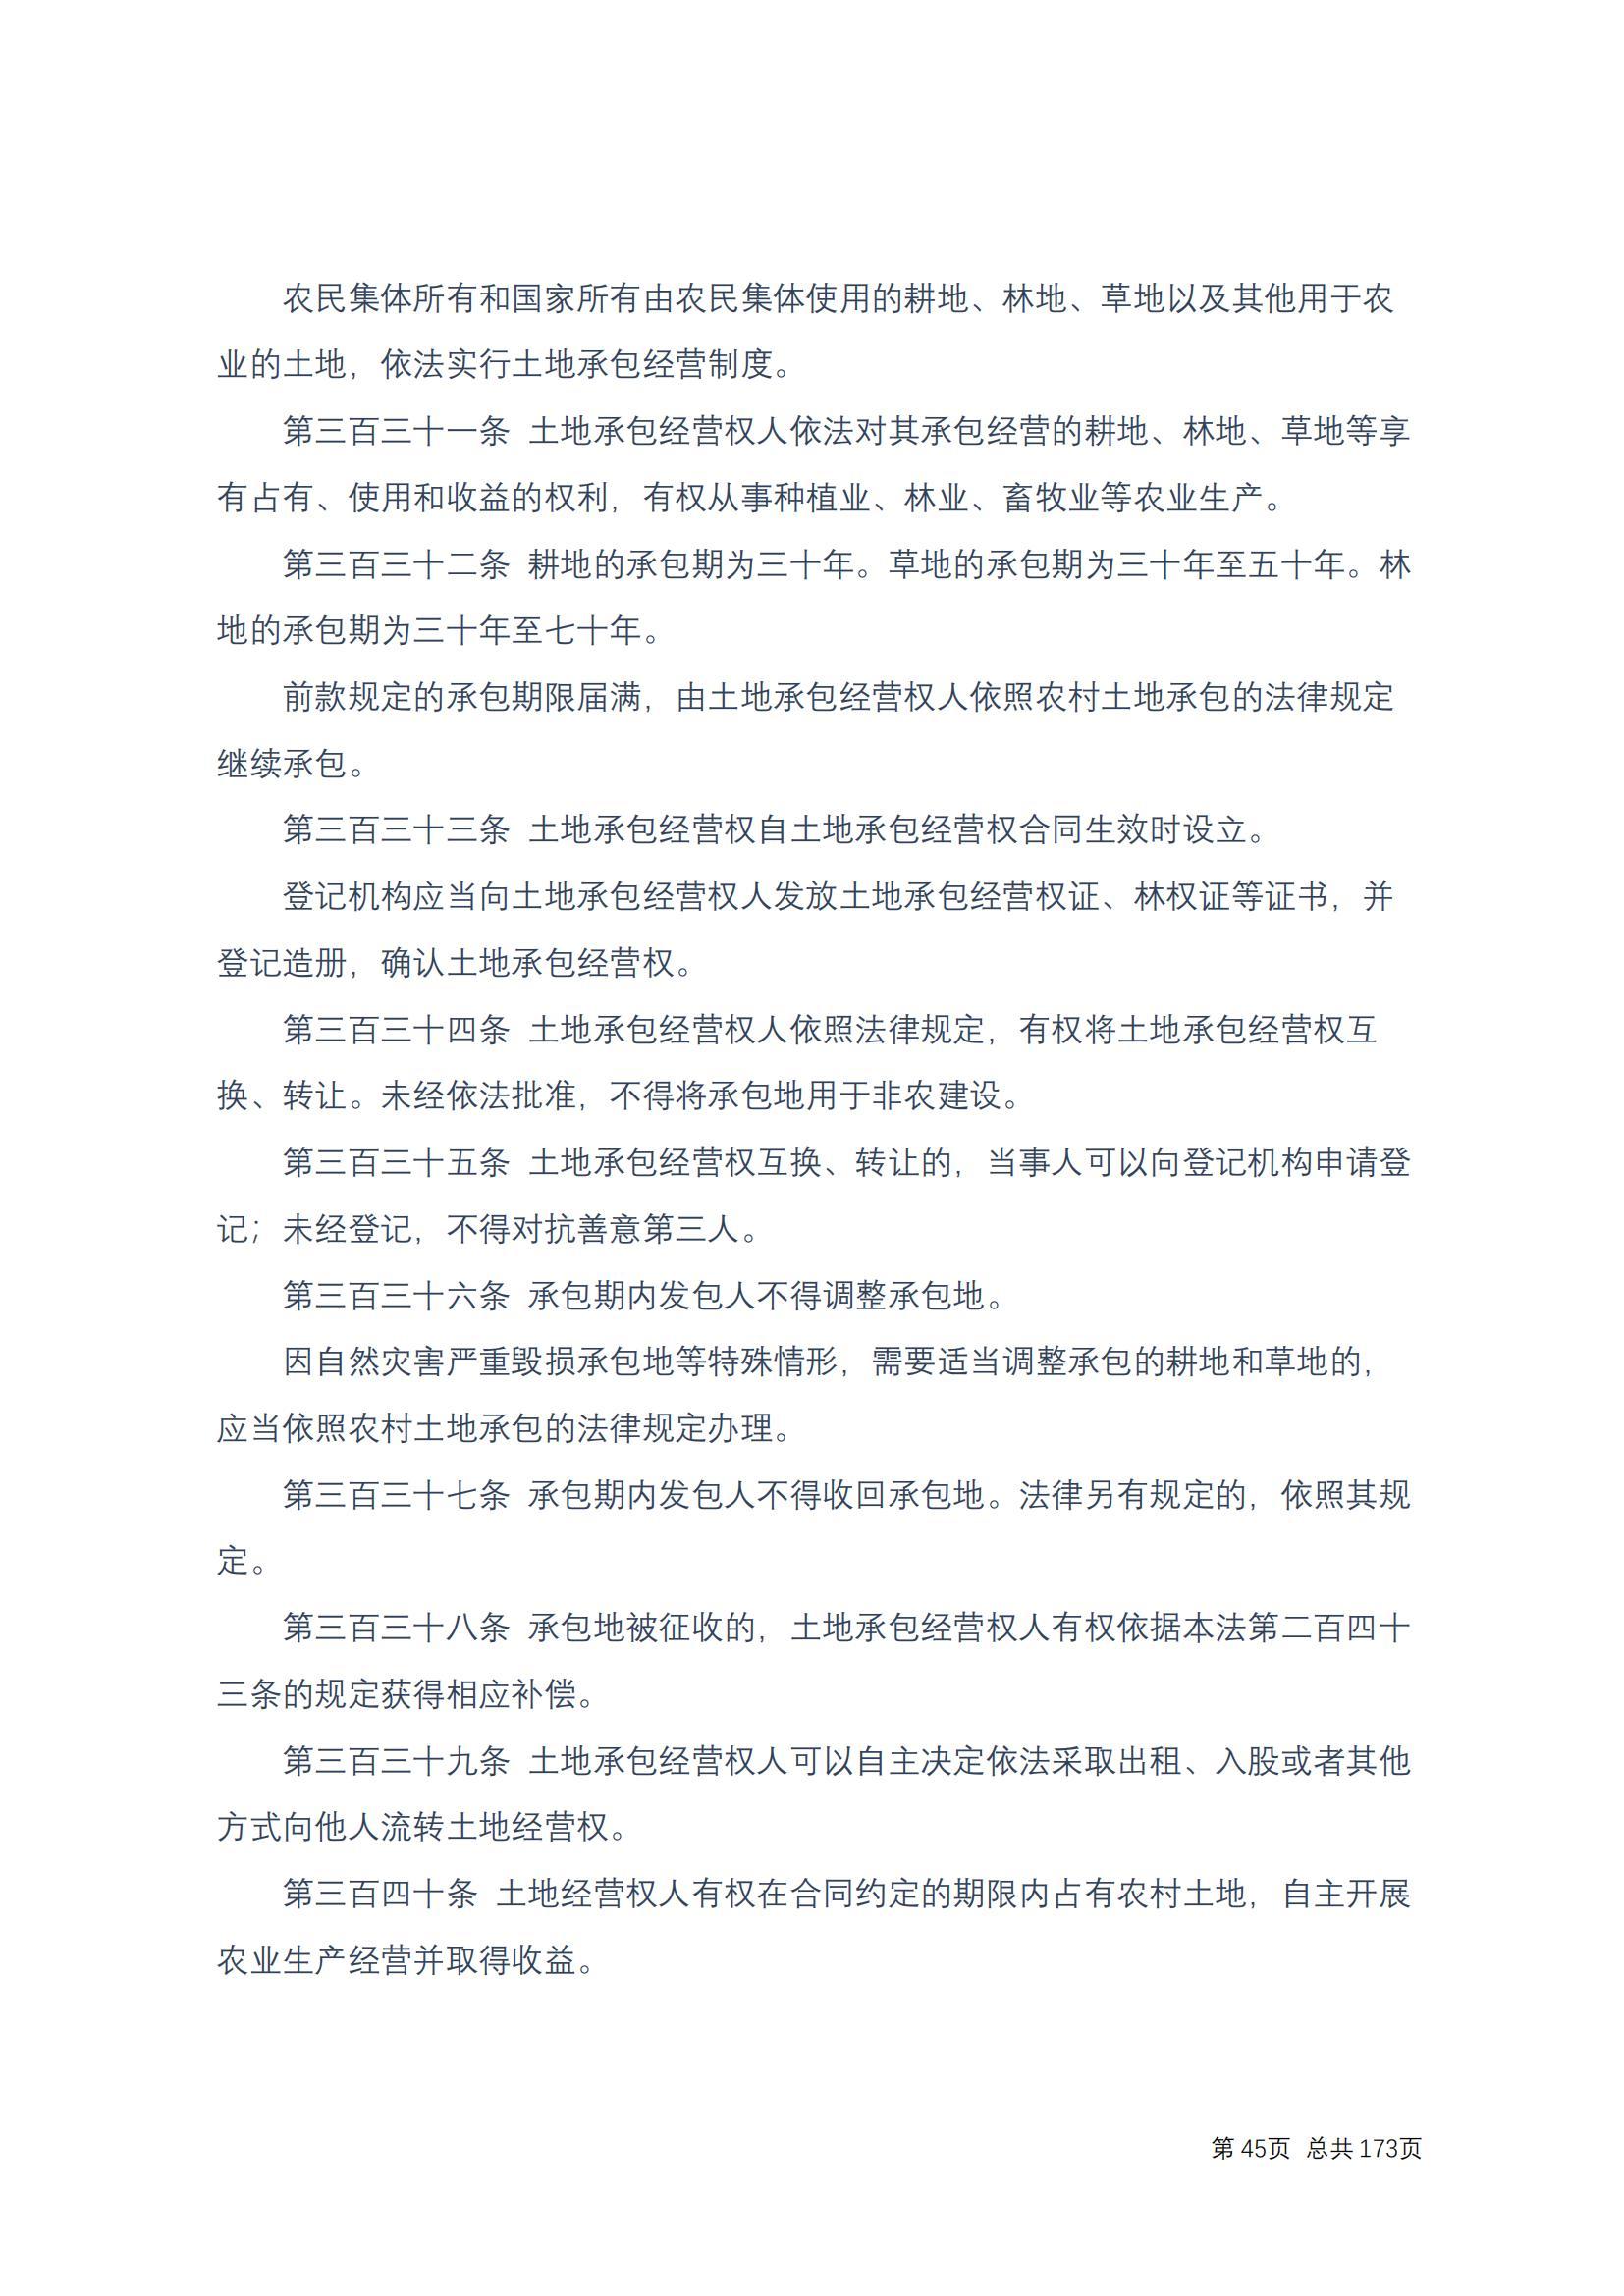 中华人民共和国民法典 修改过_44